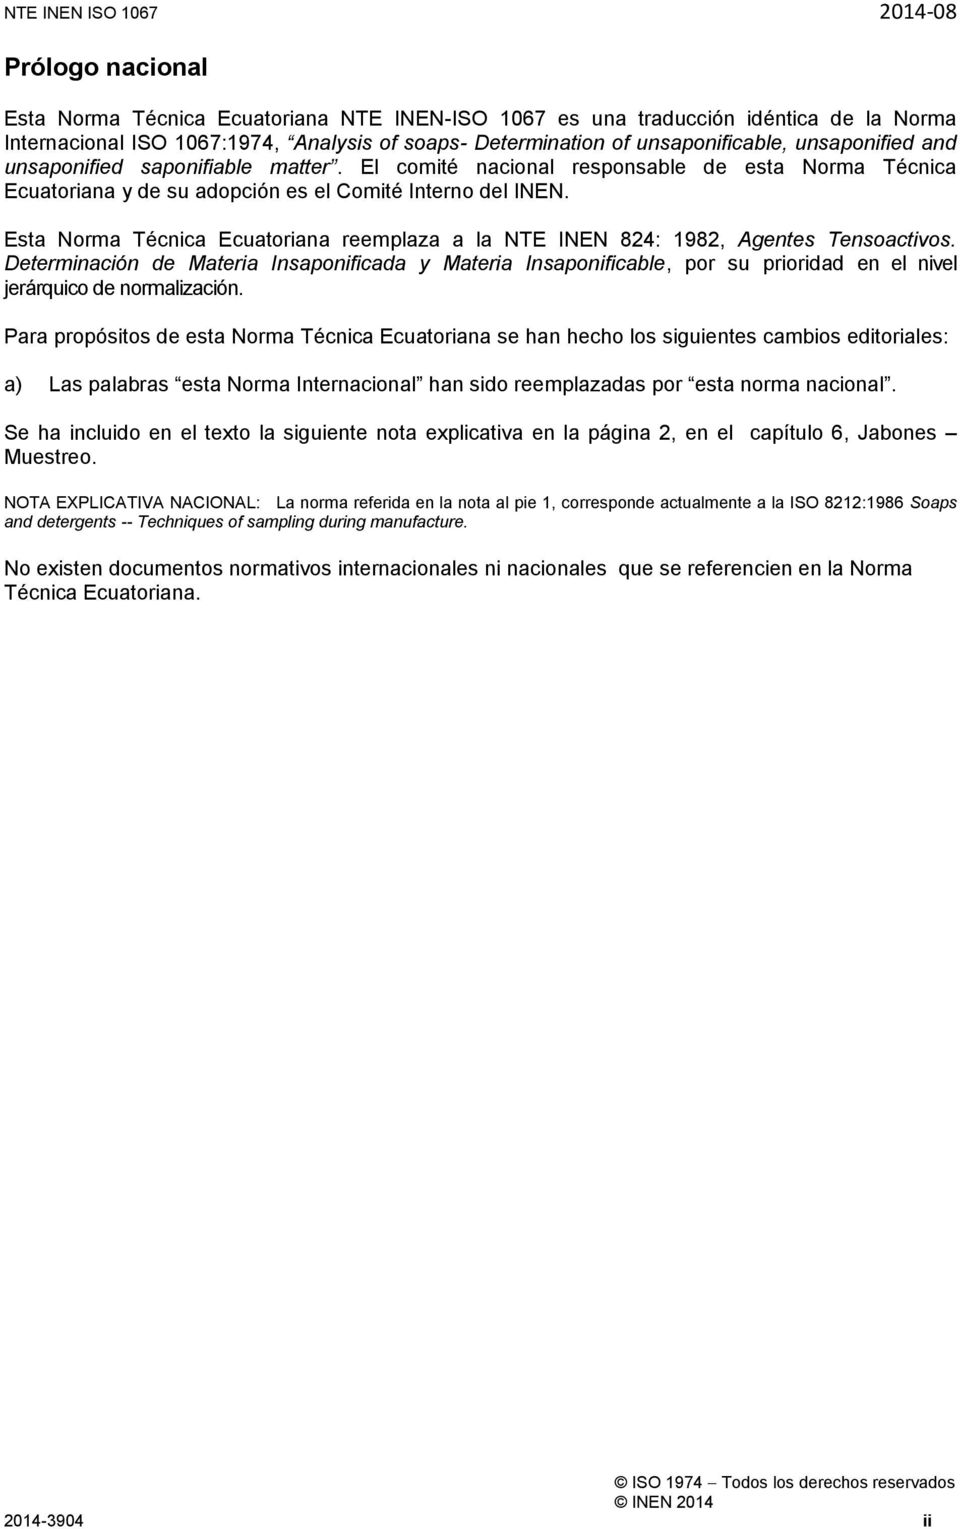 Esta Norma Técnica Ecuatoriana reemplaza a la NTE INEN 824: 1982, Agentes Tensoactivos.